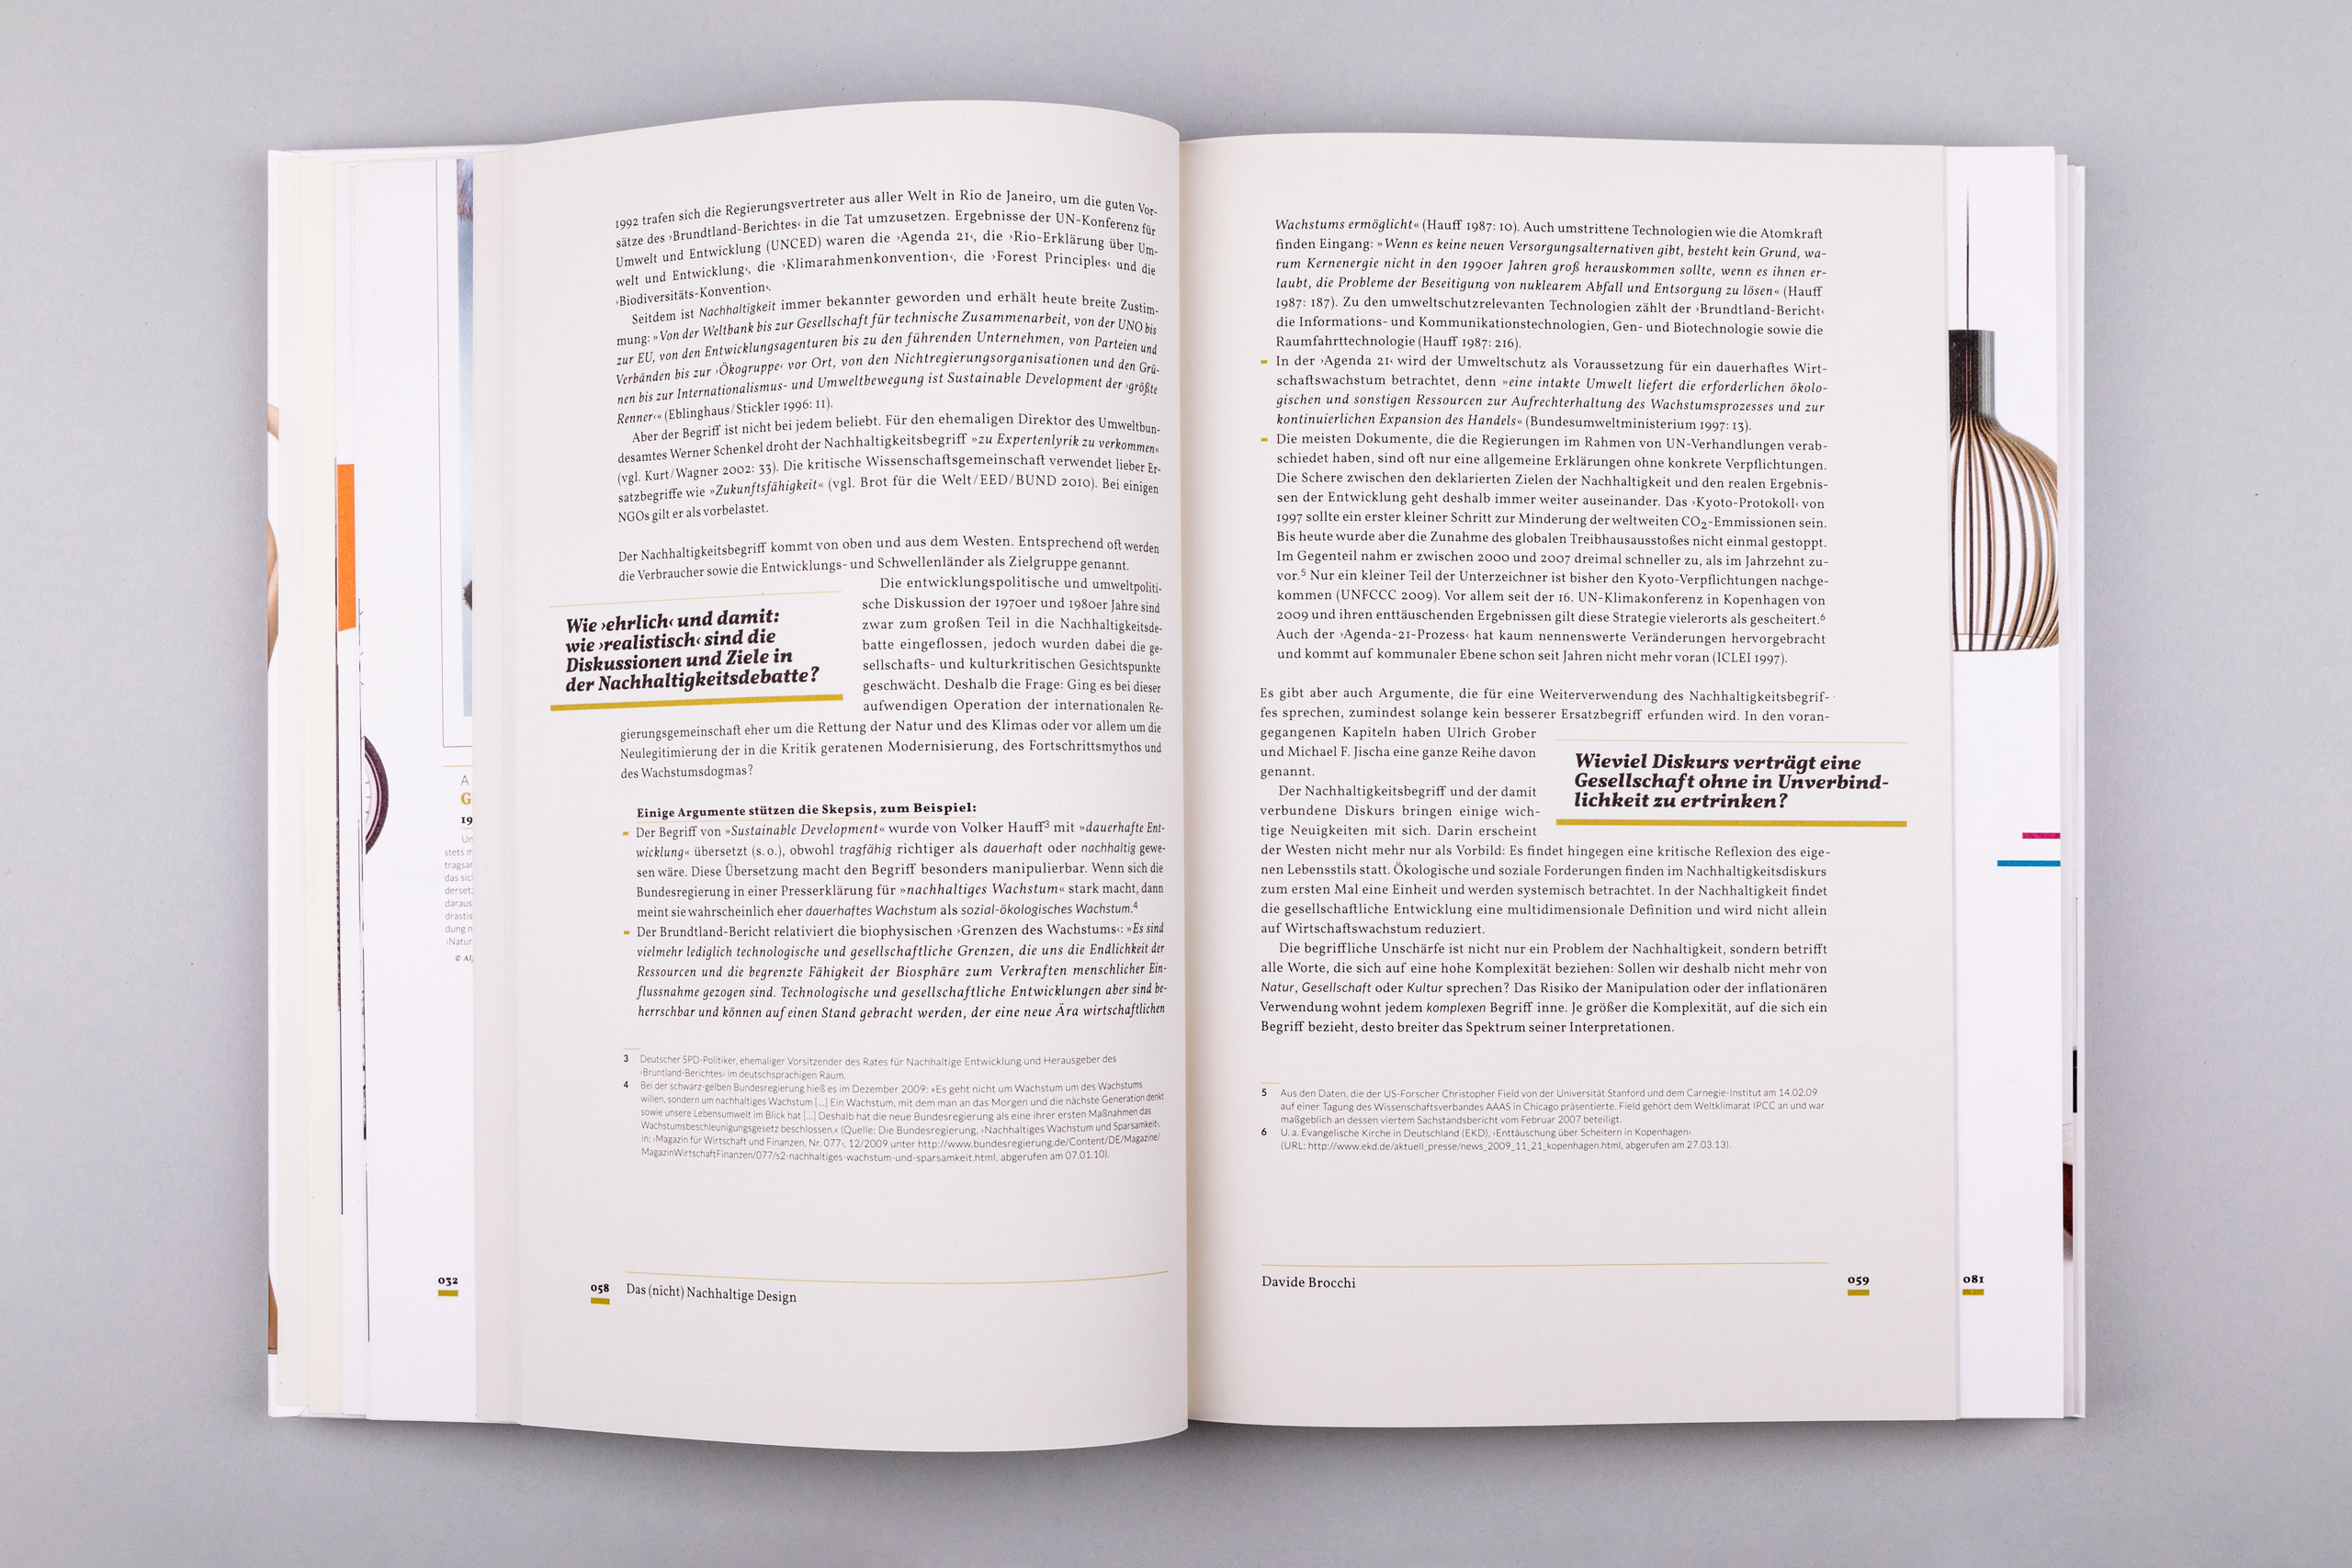 Büro Gestalten: Die Geschichte de nachhaltigen Designs (Buch, S. 58–59)